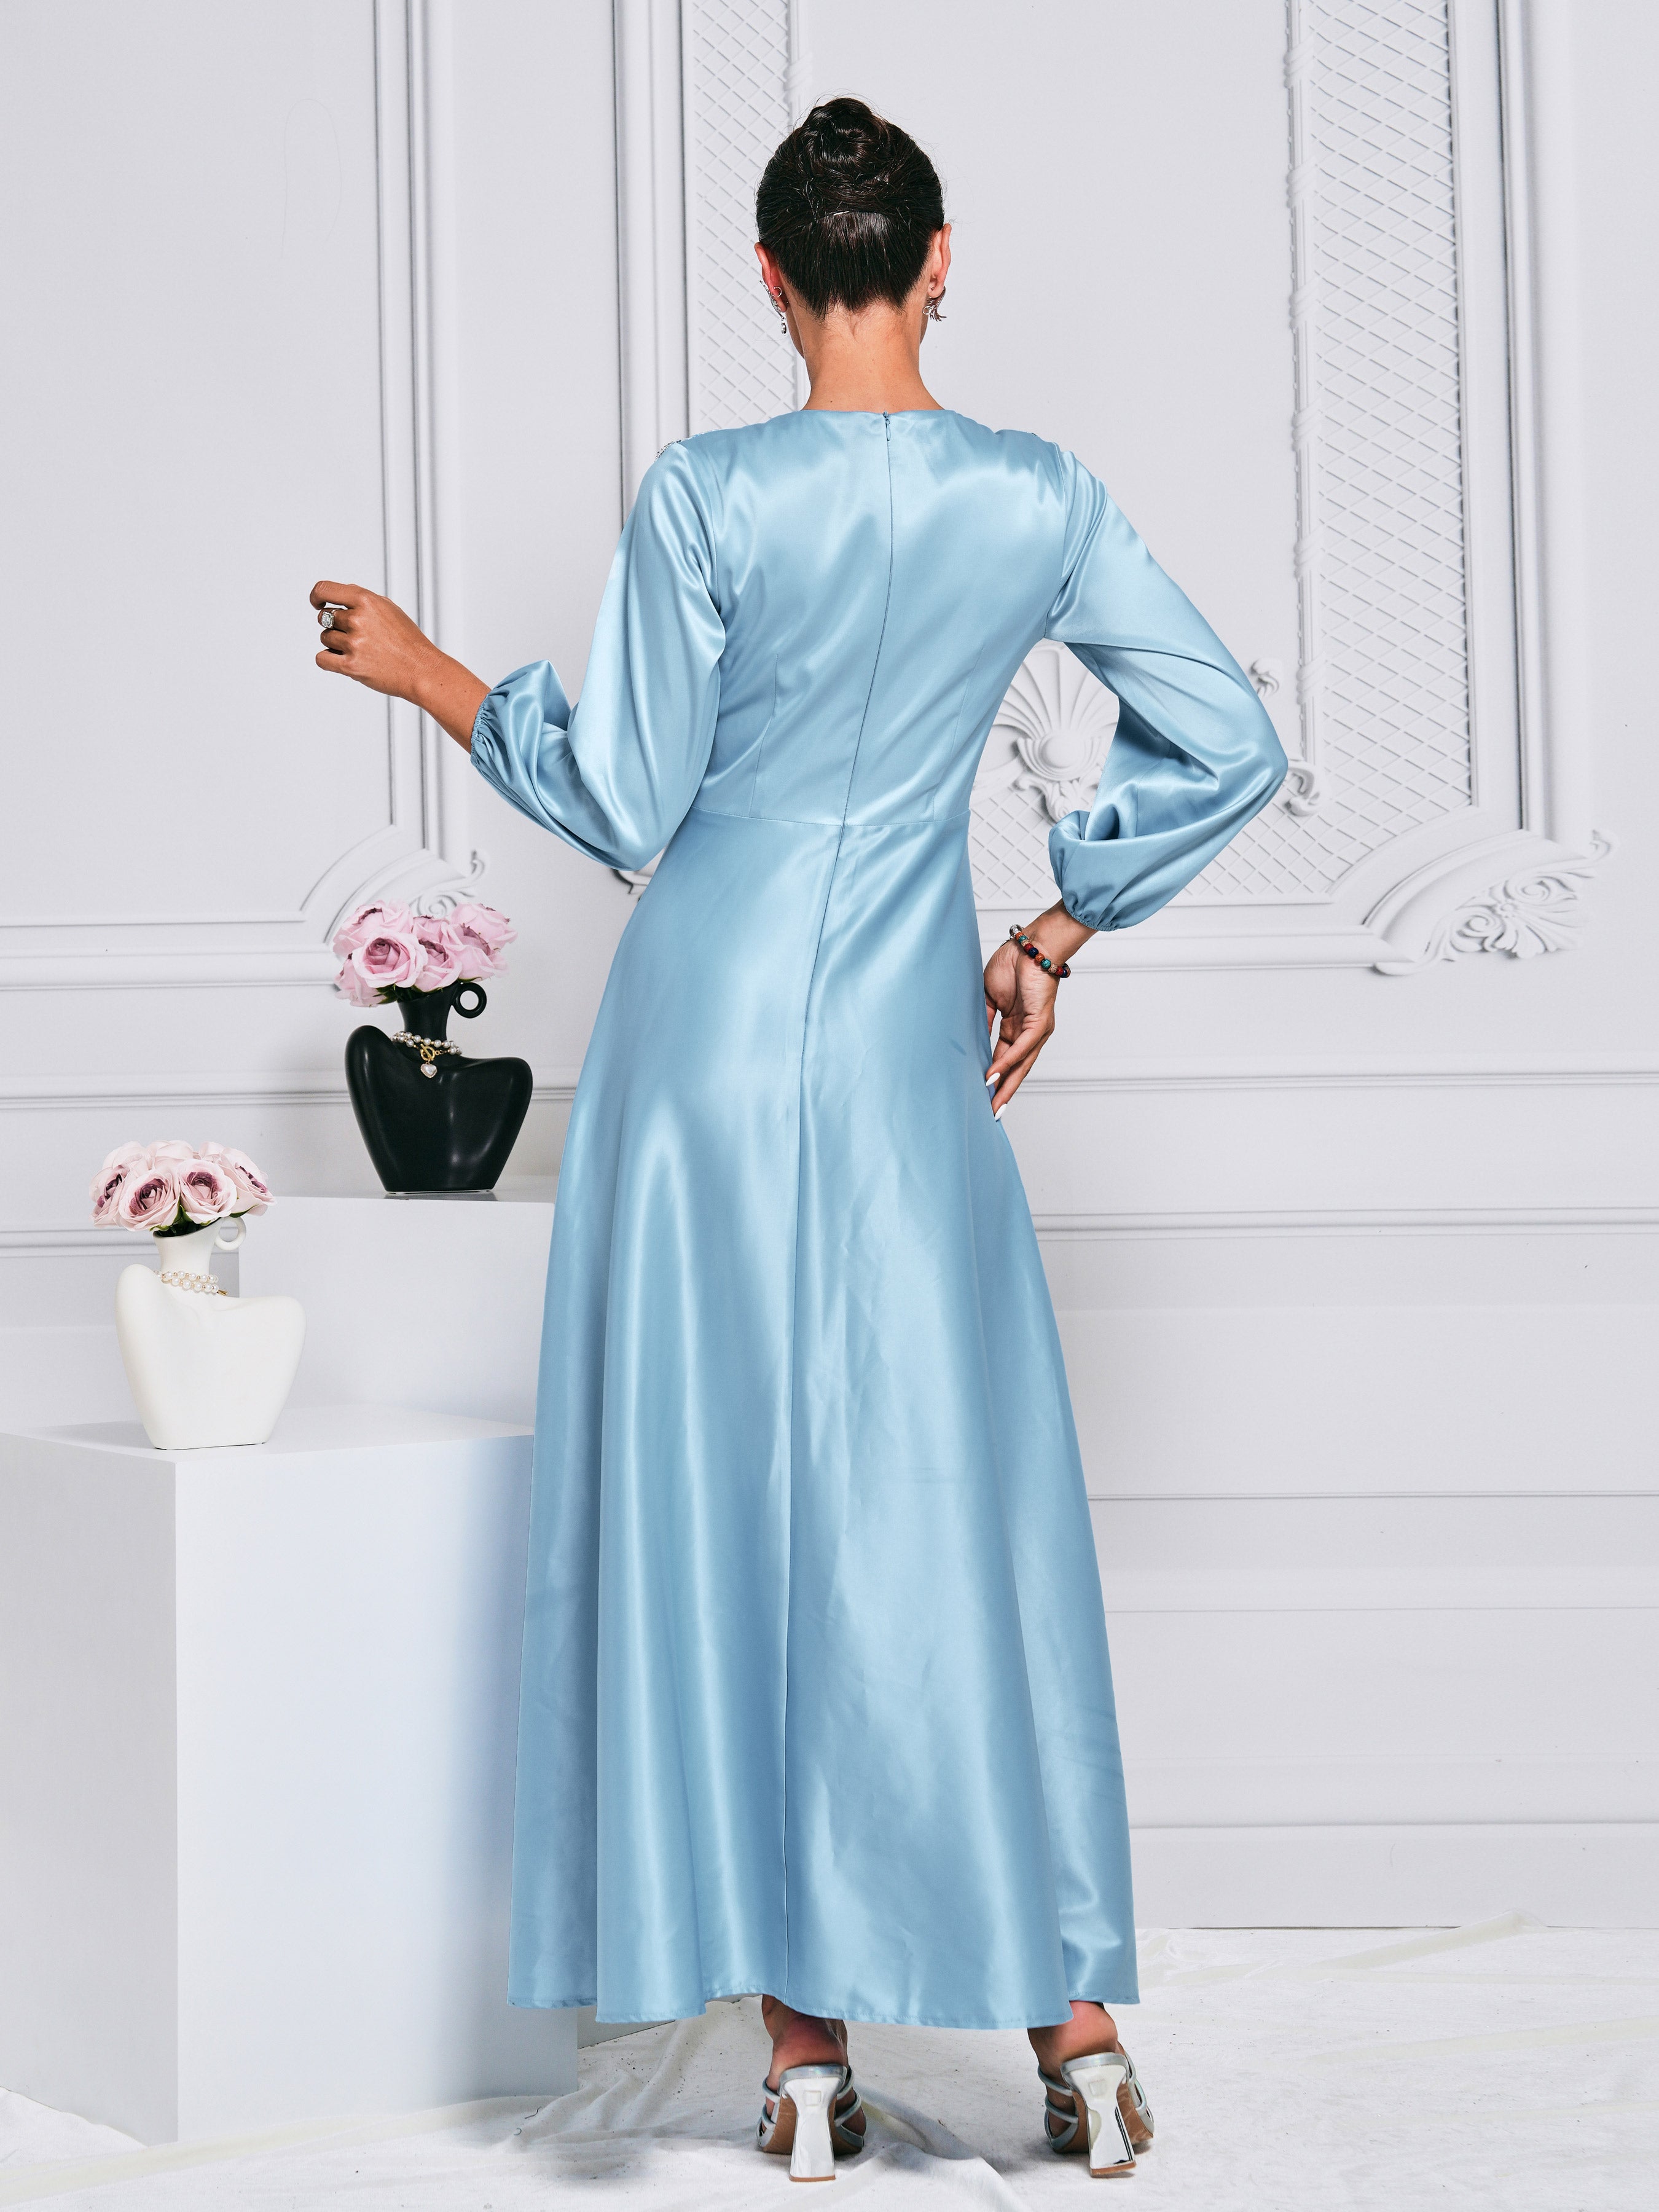 Puff Sleeve Blue A-line Satin Dress